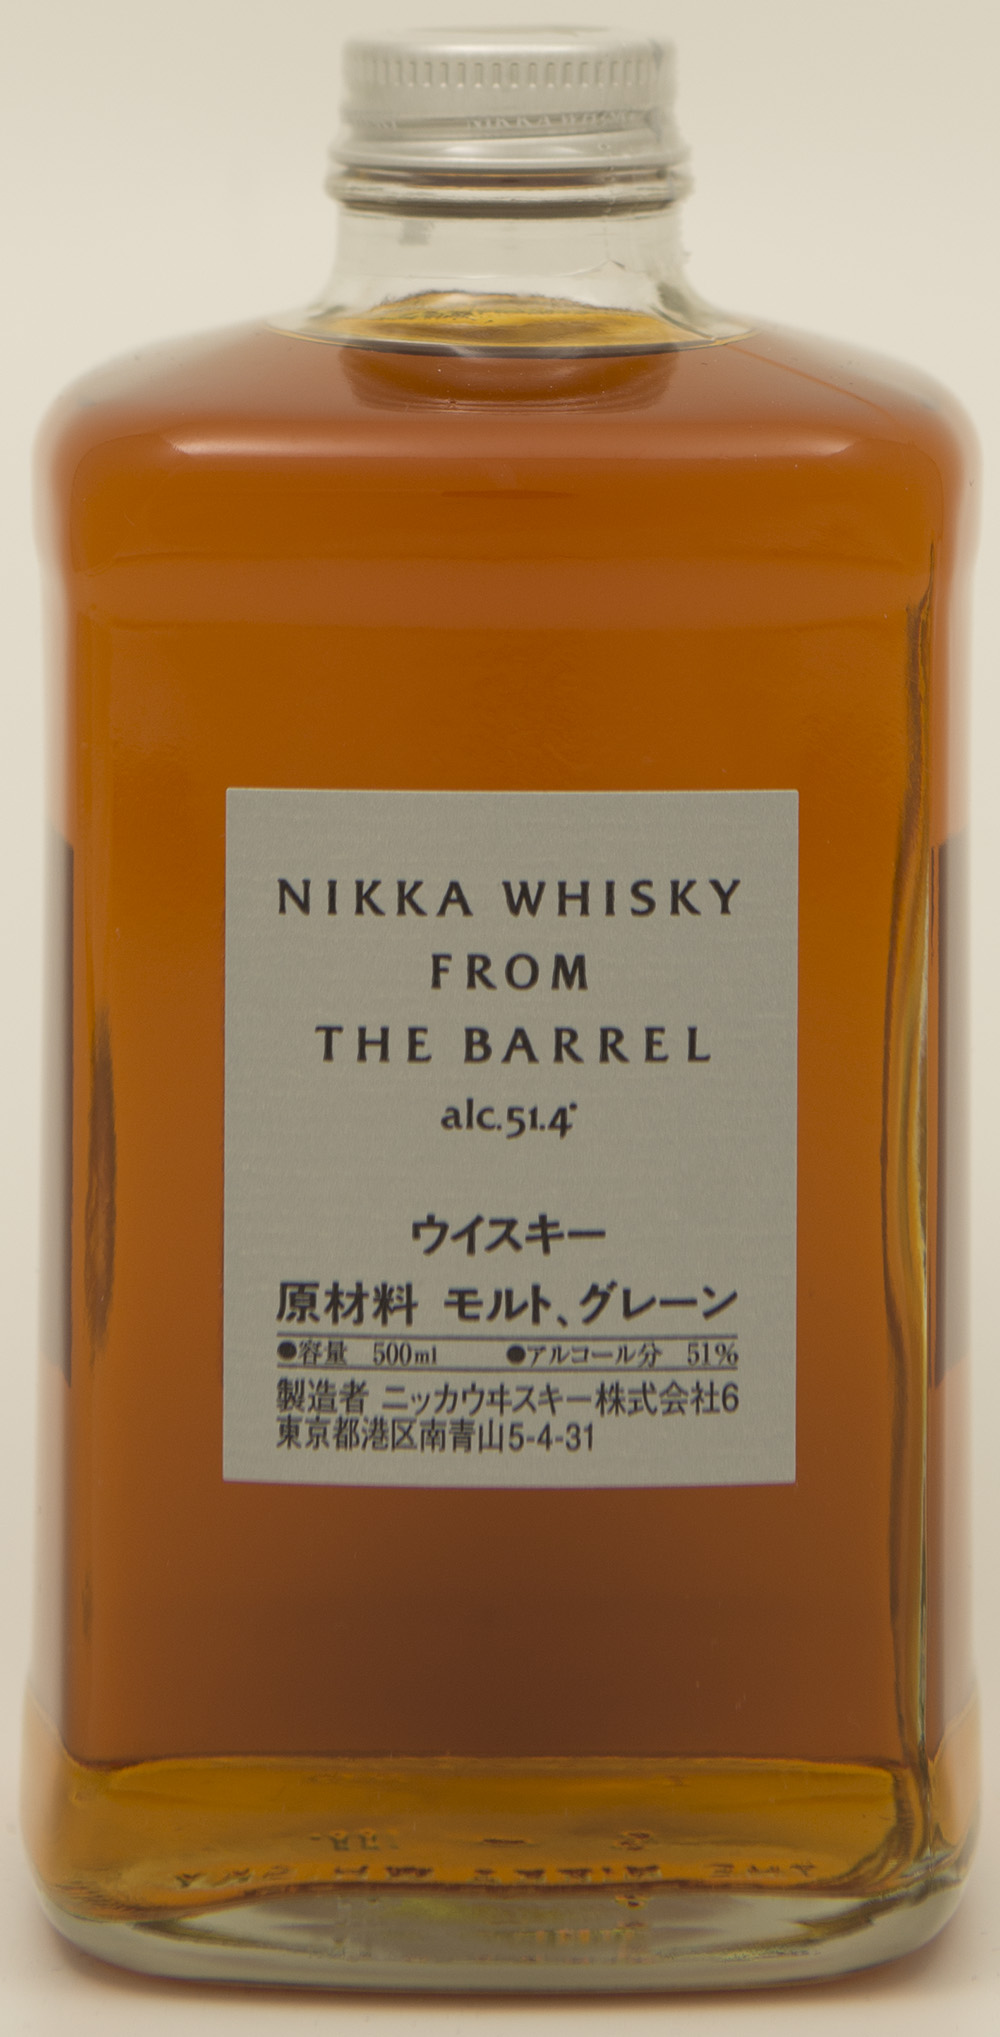 Billede: DSC_3672 - Nikka Whisky from The Barrel - bottle front.jpg